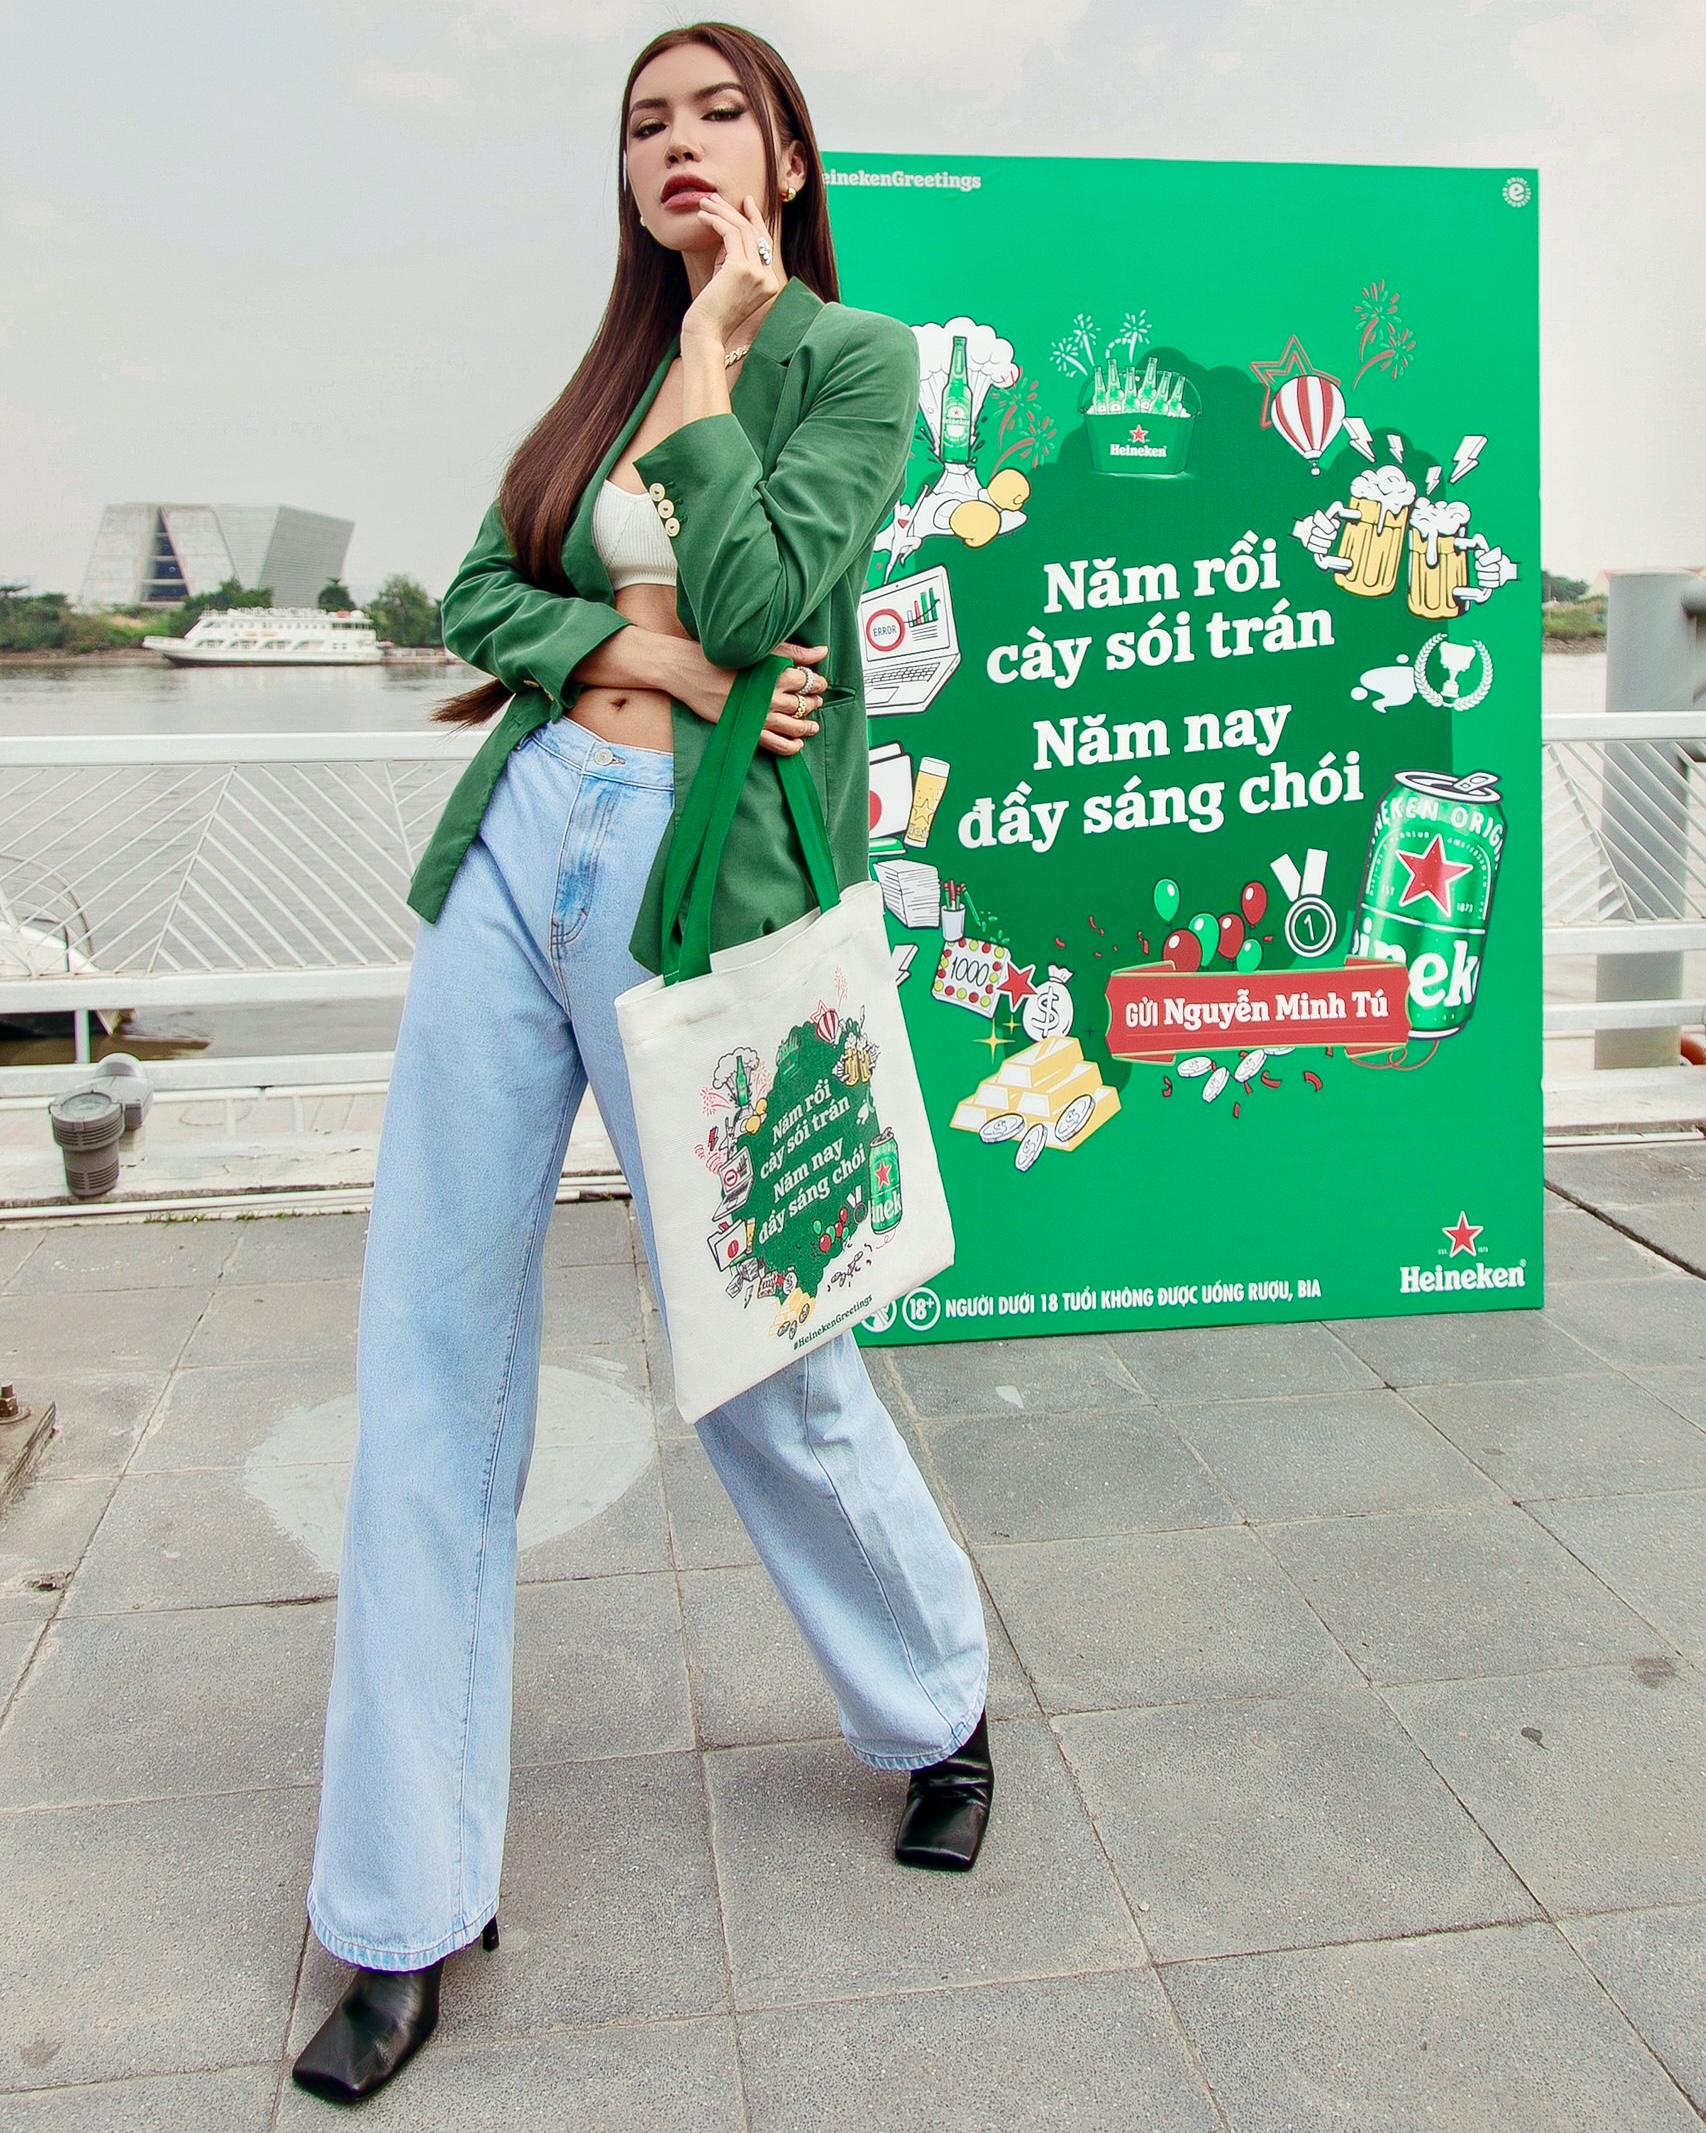 Dân mạng hào hứng “bắt trend” chúc mừng năm mới của Heineken - ảnh 2